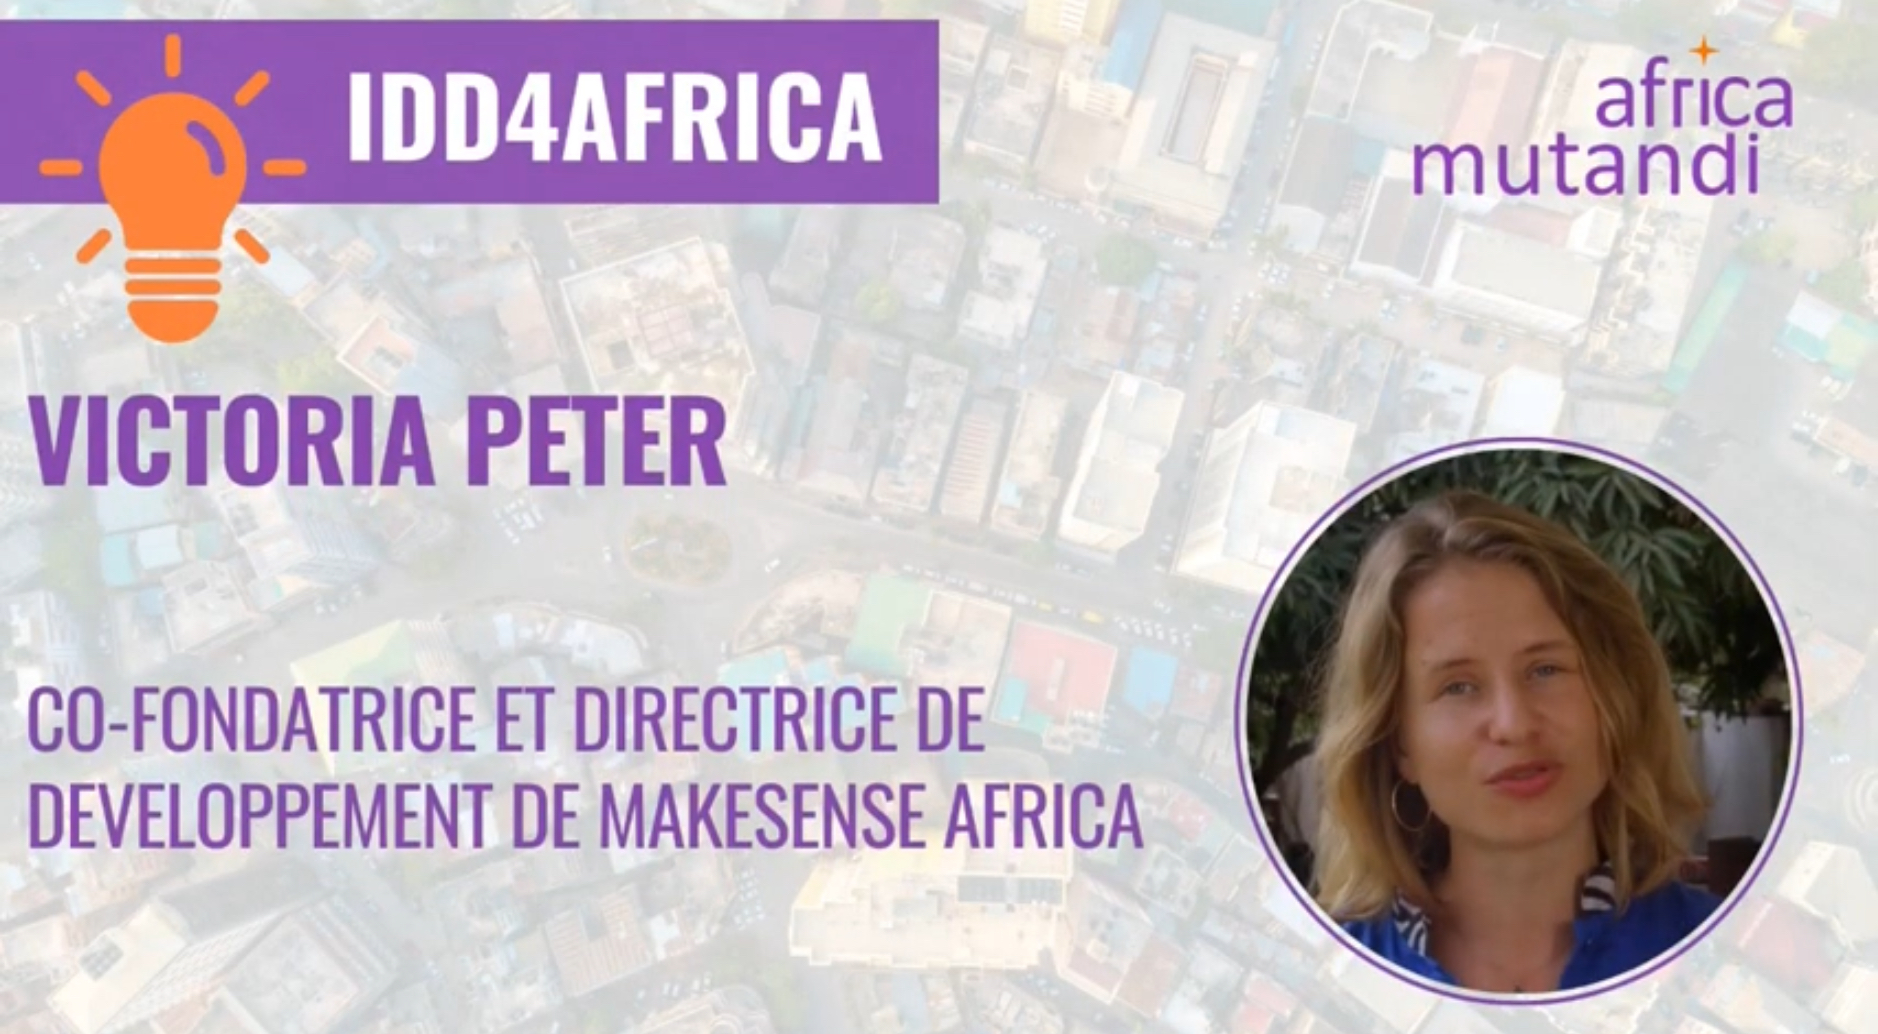 La vision de Victoria Peter, co-fondatrice et responsable du développement de makesense Africa sur les leviers d’accélération des ODD en Afrique